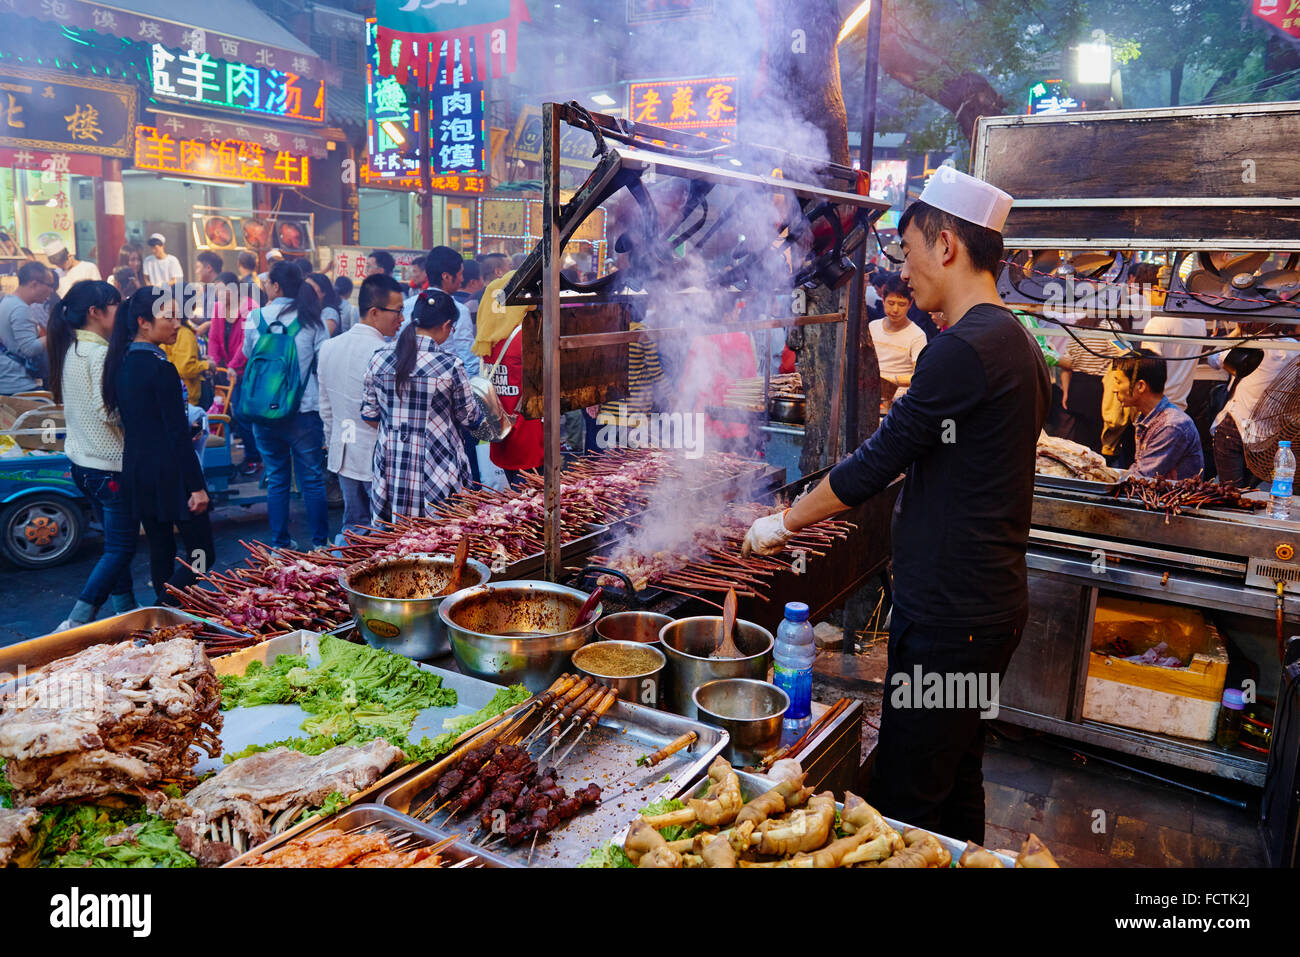 Chine, province du Shaanxi, Xi'an, Hui quartier, marché alimentaire, de kebab Banque D'Images